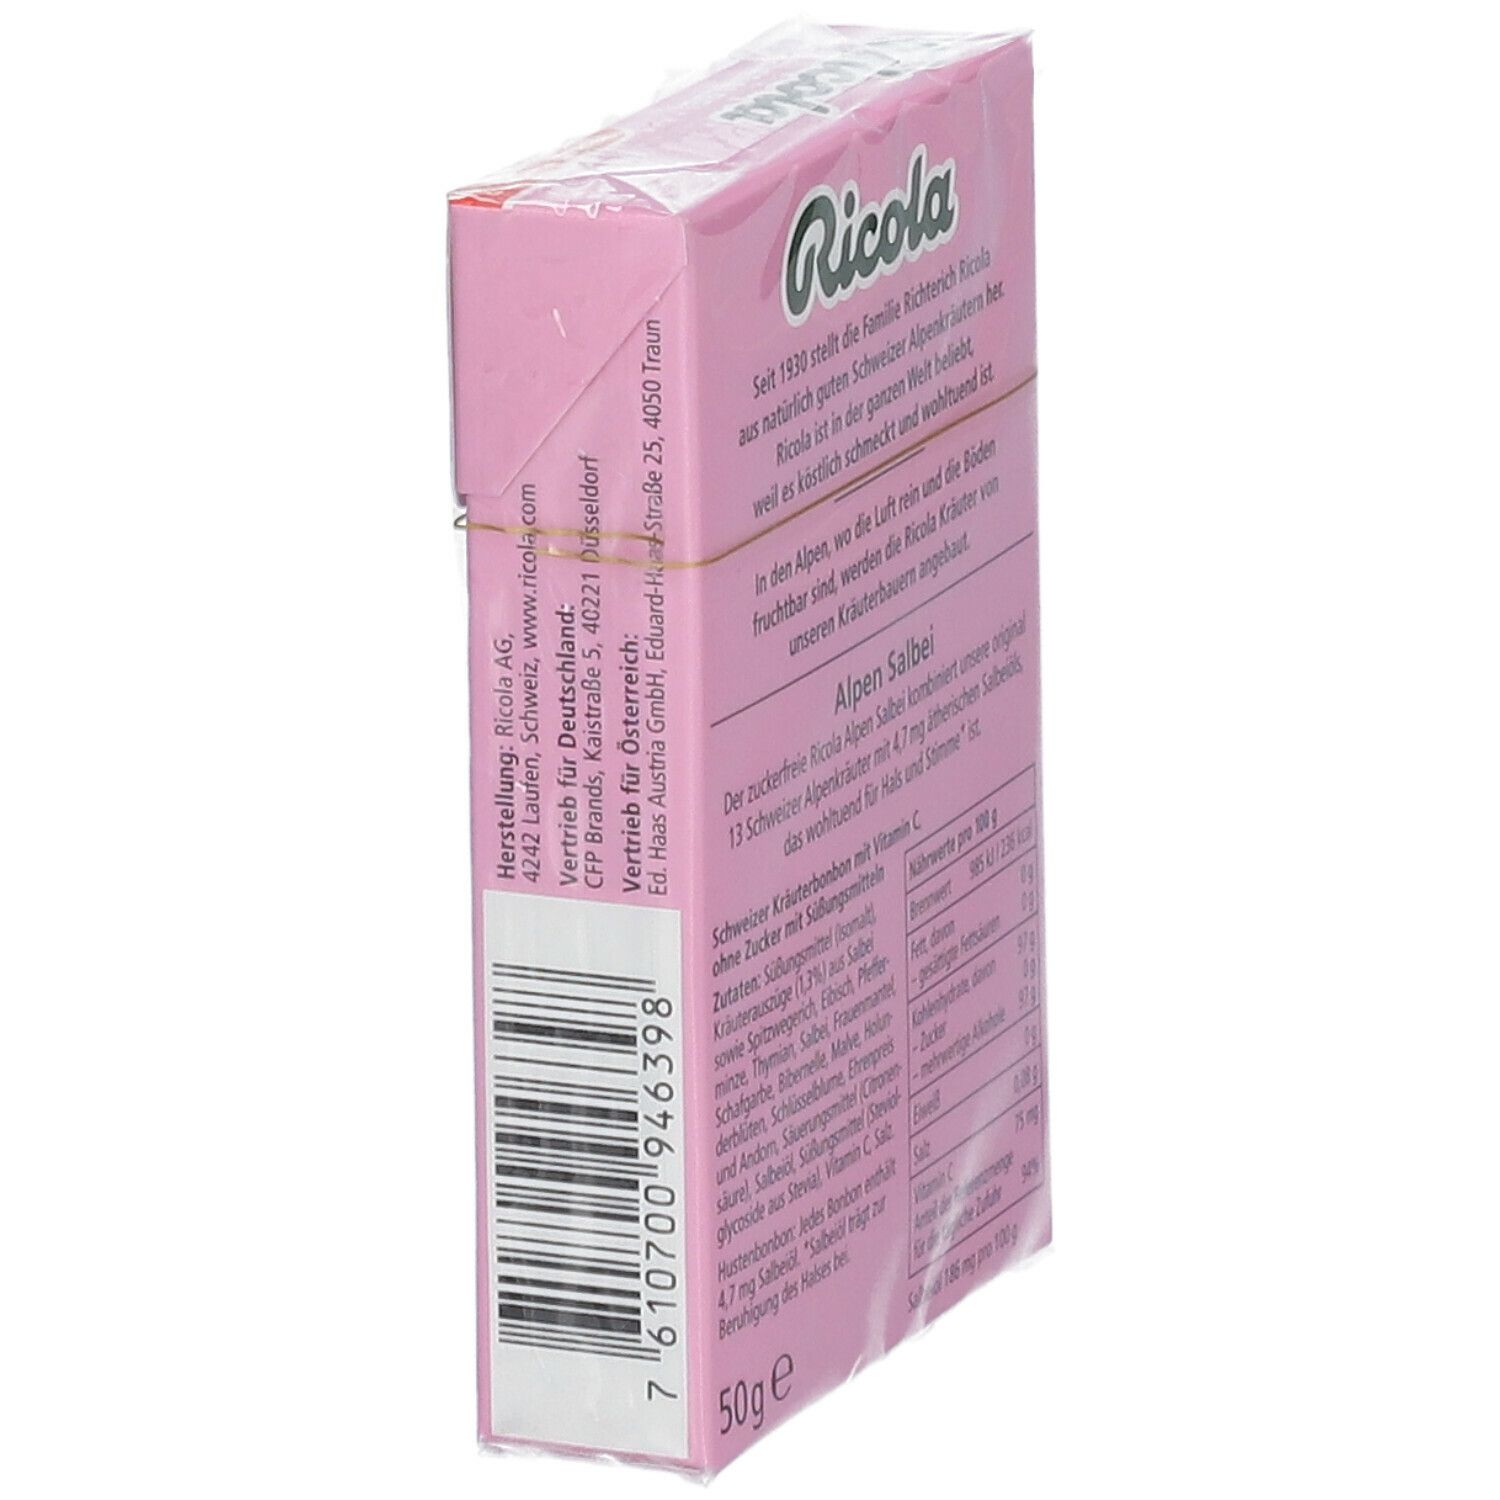 Ricola® Schweizer Kräuterbonbons Box Salbei ohne Zucker